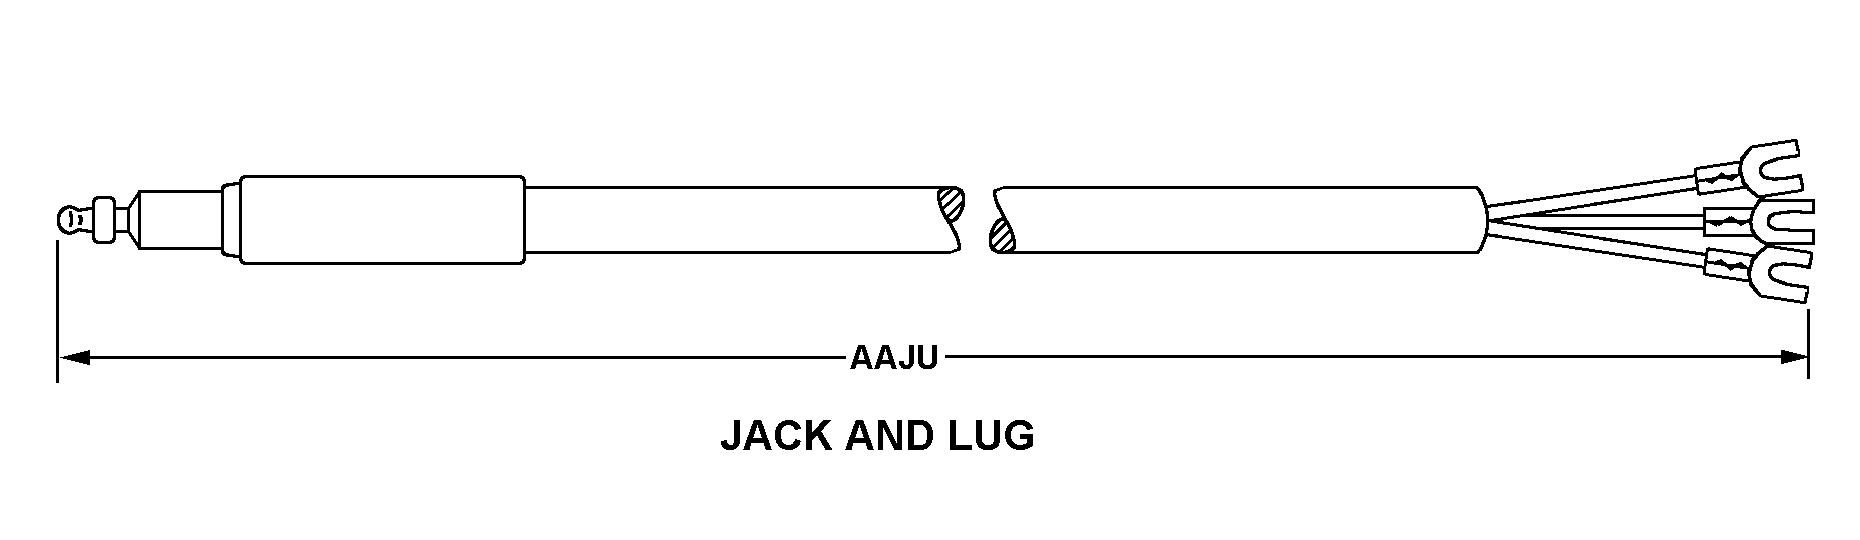 JACK AND LUG style nsn 6150-00-139-5578